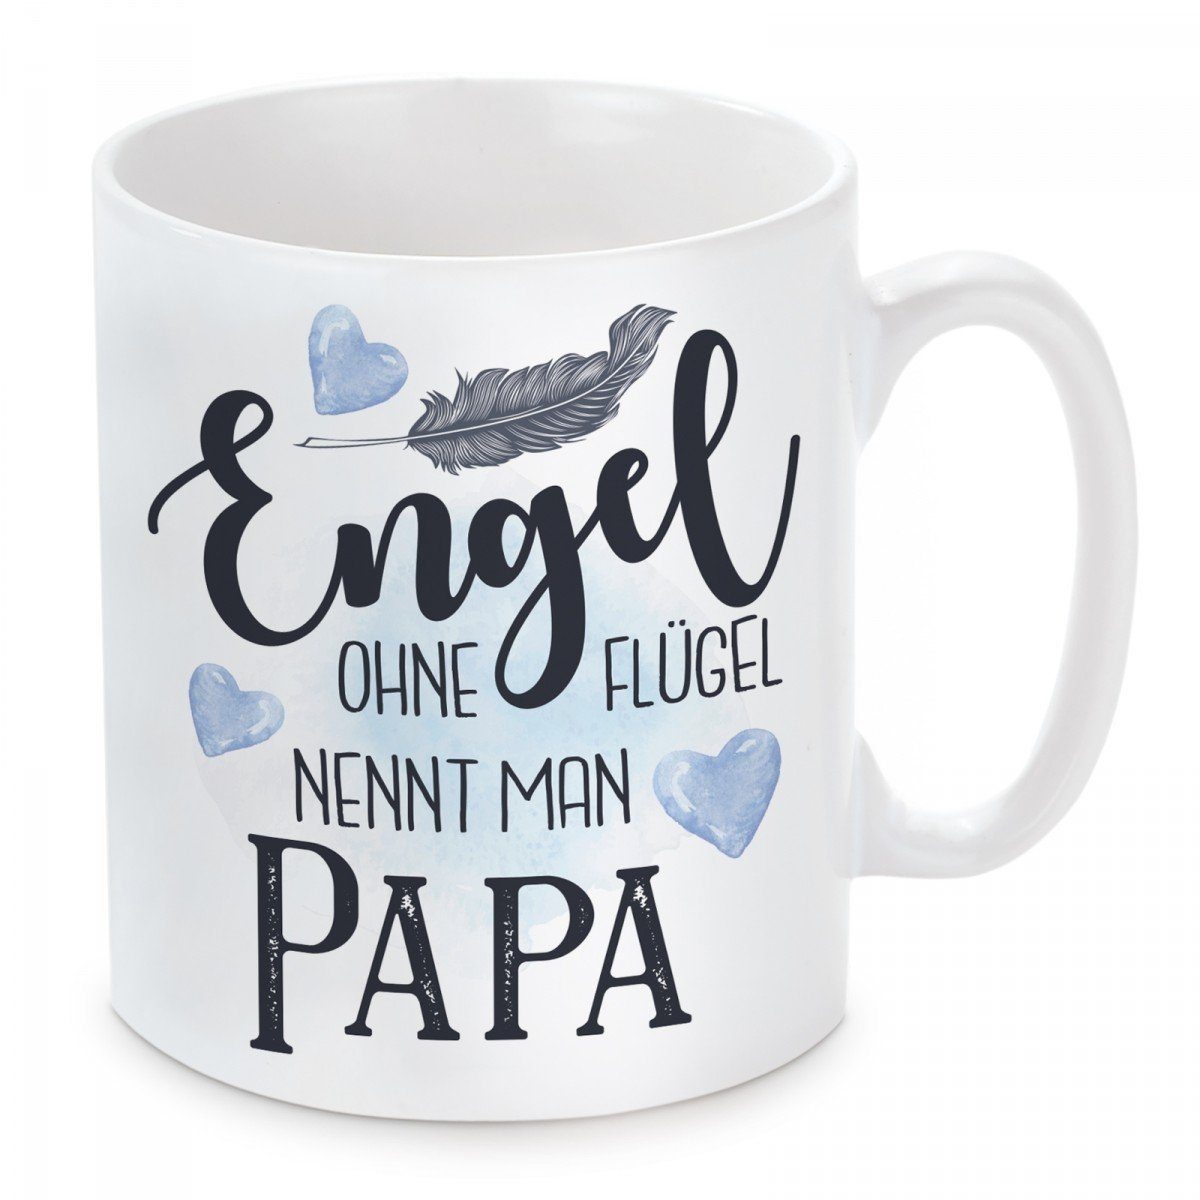 Herzbotschaft Tasse Kaffeebecher mit Motiv Engel ohne Flügel nennt man Papa, Keramik, Kaffeetasse spülmaschinenfest und mikrowellengeeignet